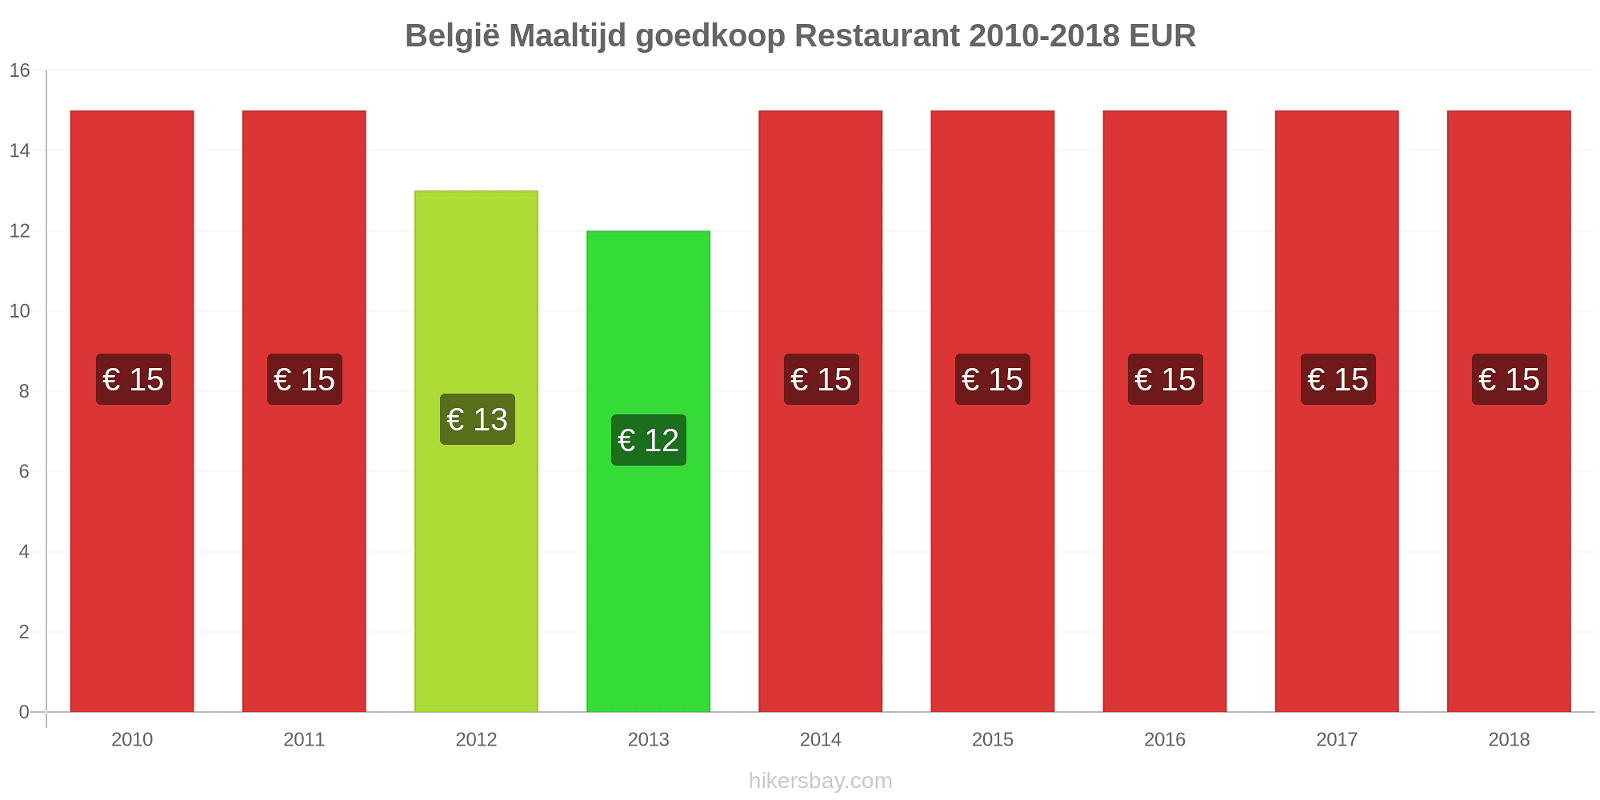 België prijswijzigingen Maaltijd in een goedkoop restaurant hikersbay.com